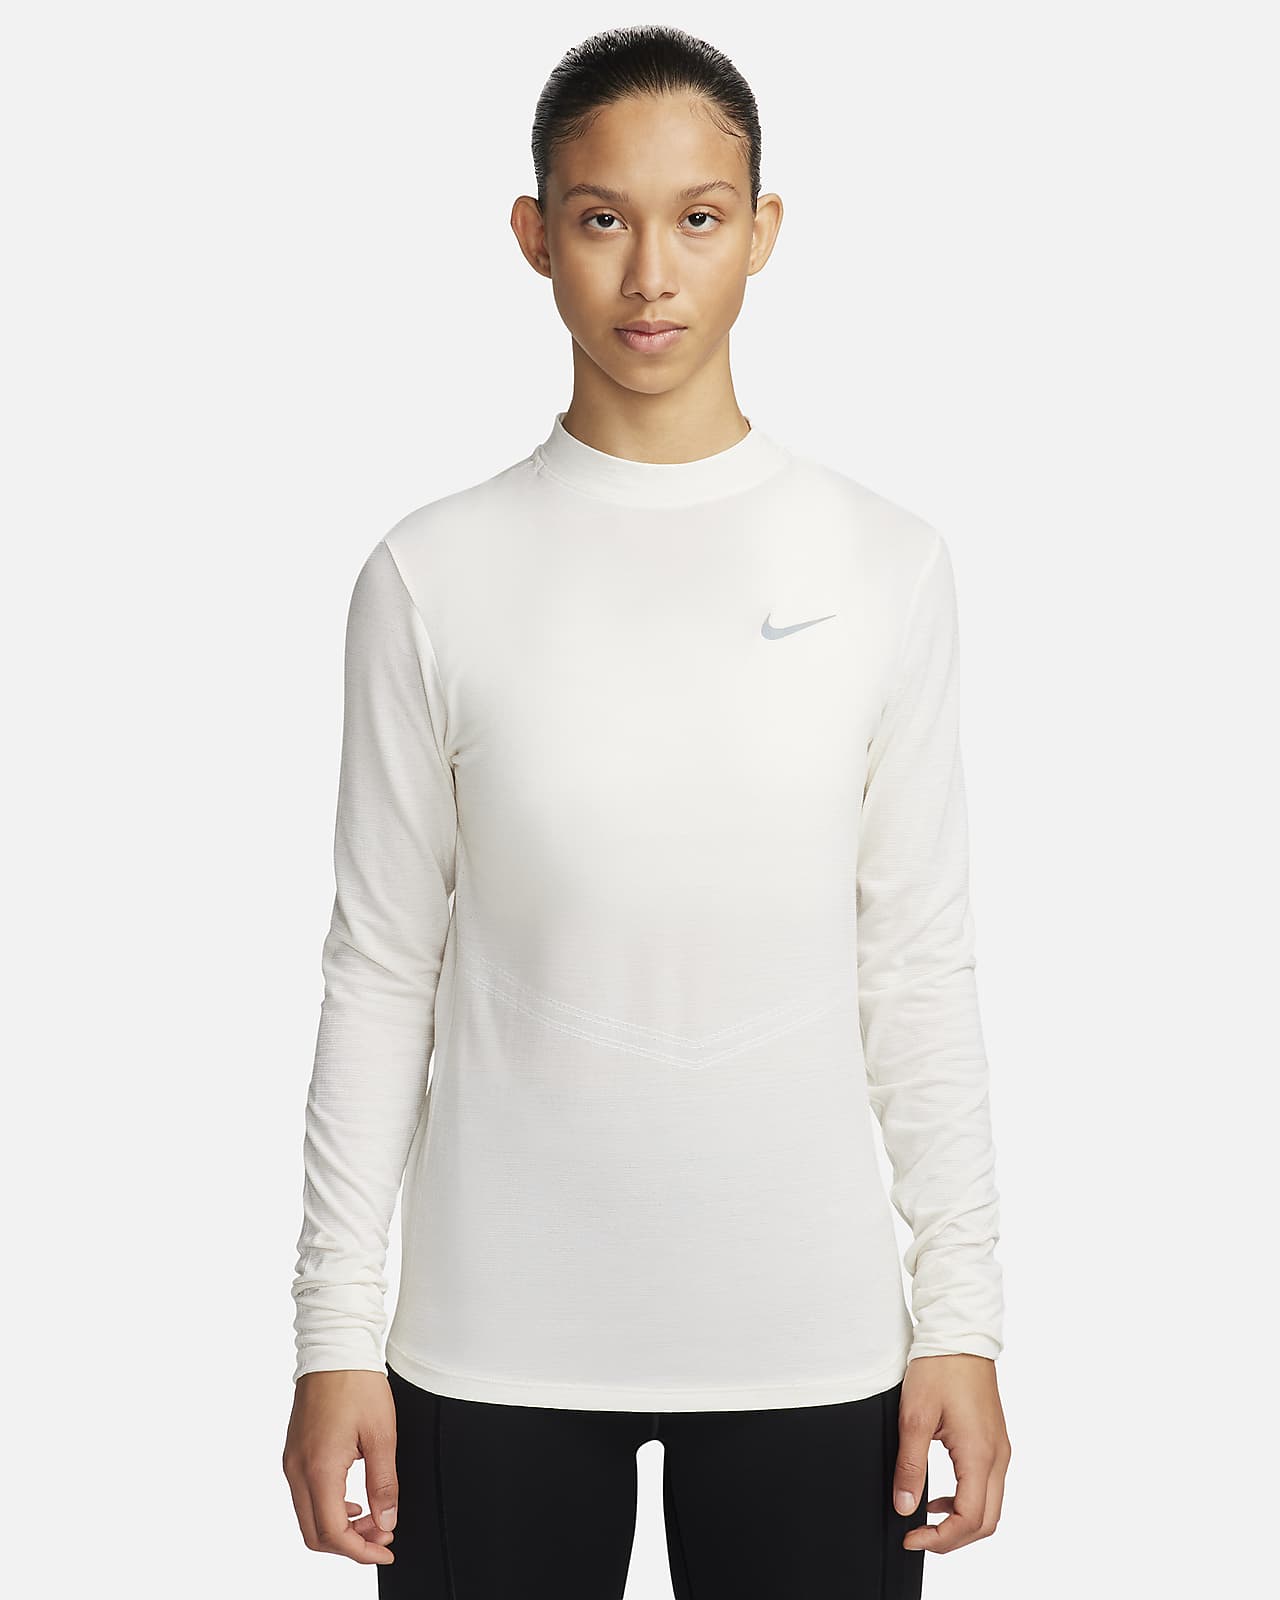 Γυναικεία μακρυμάνικη μπλούζα Dri-FIT για τρέξιμο με ψηλό γιακά Nike Swift